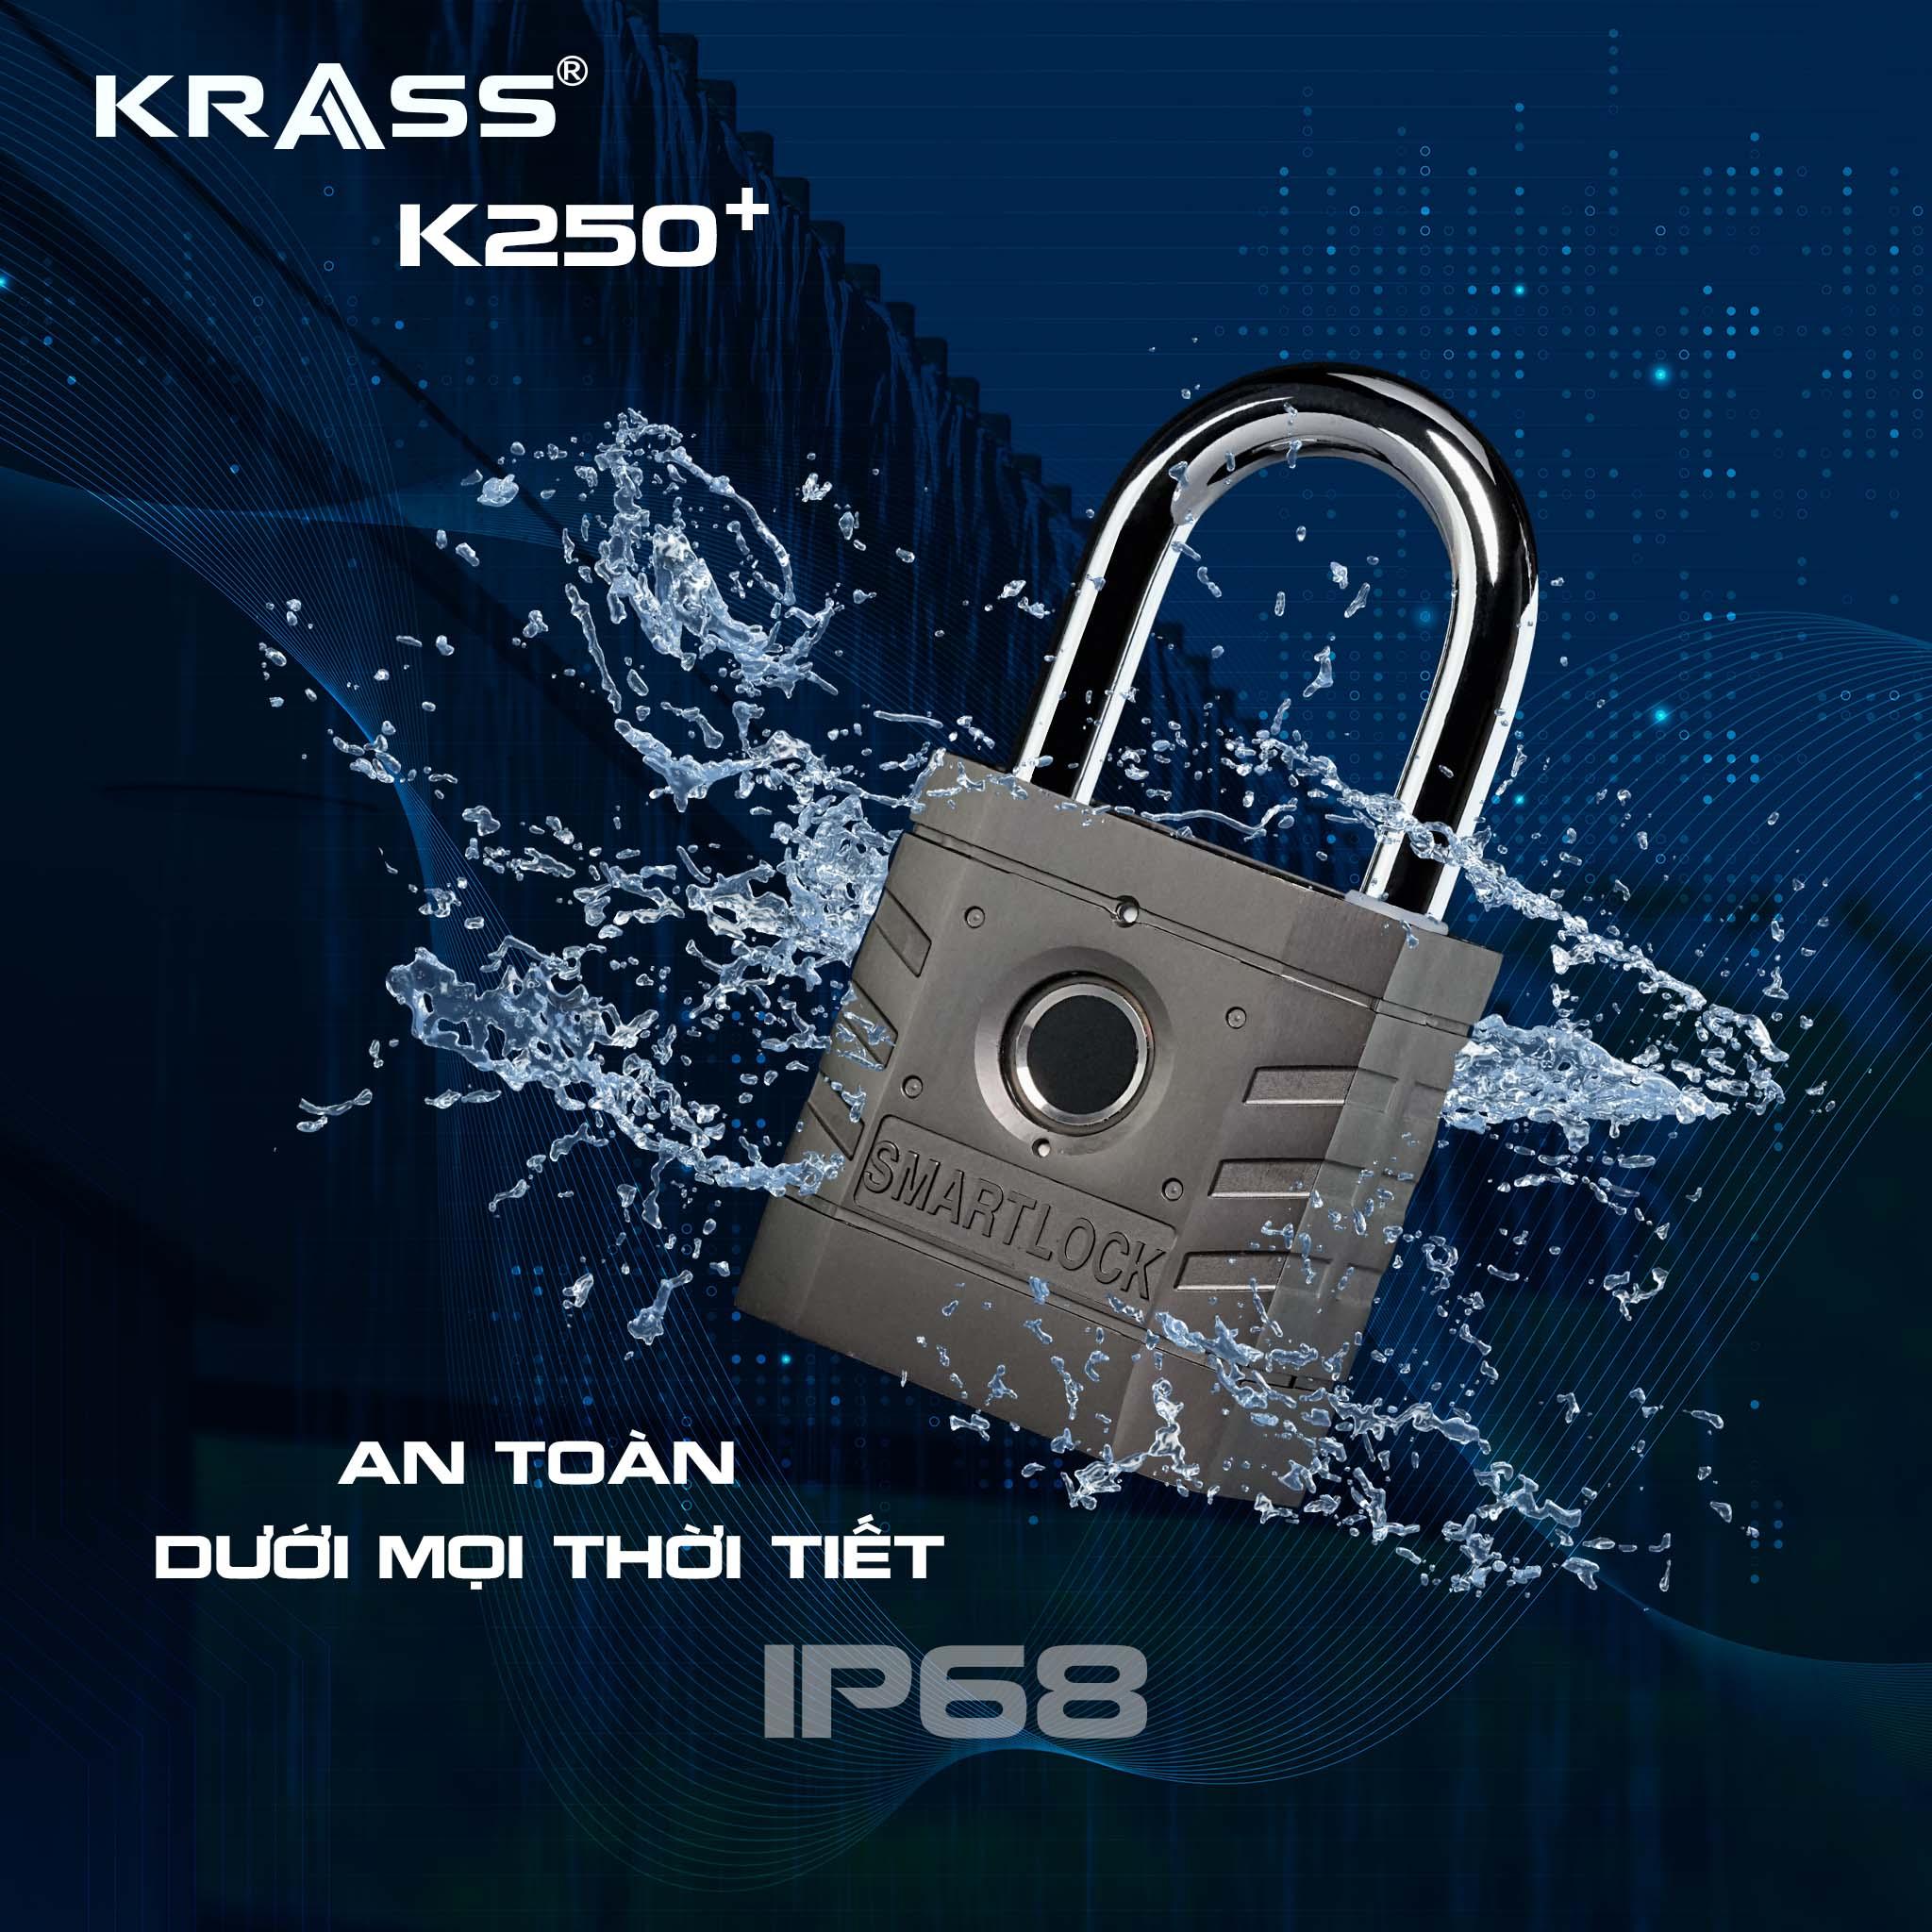 Khóa Krass K250 Plus - Đột phá công nghệ Đức về bảo mật vân tay - 1